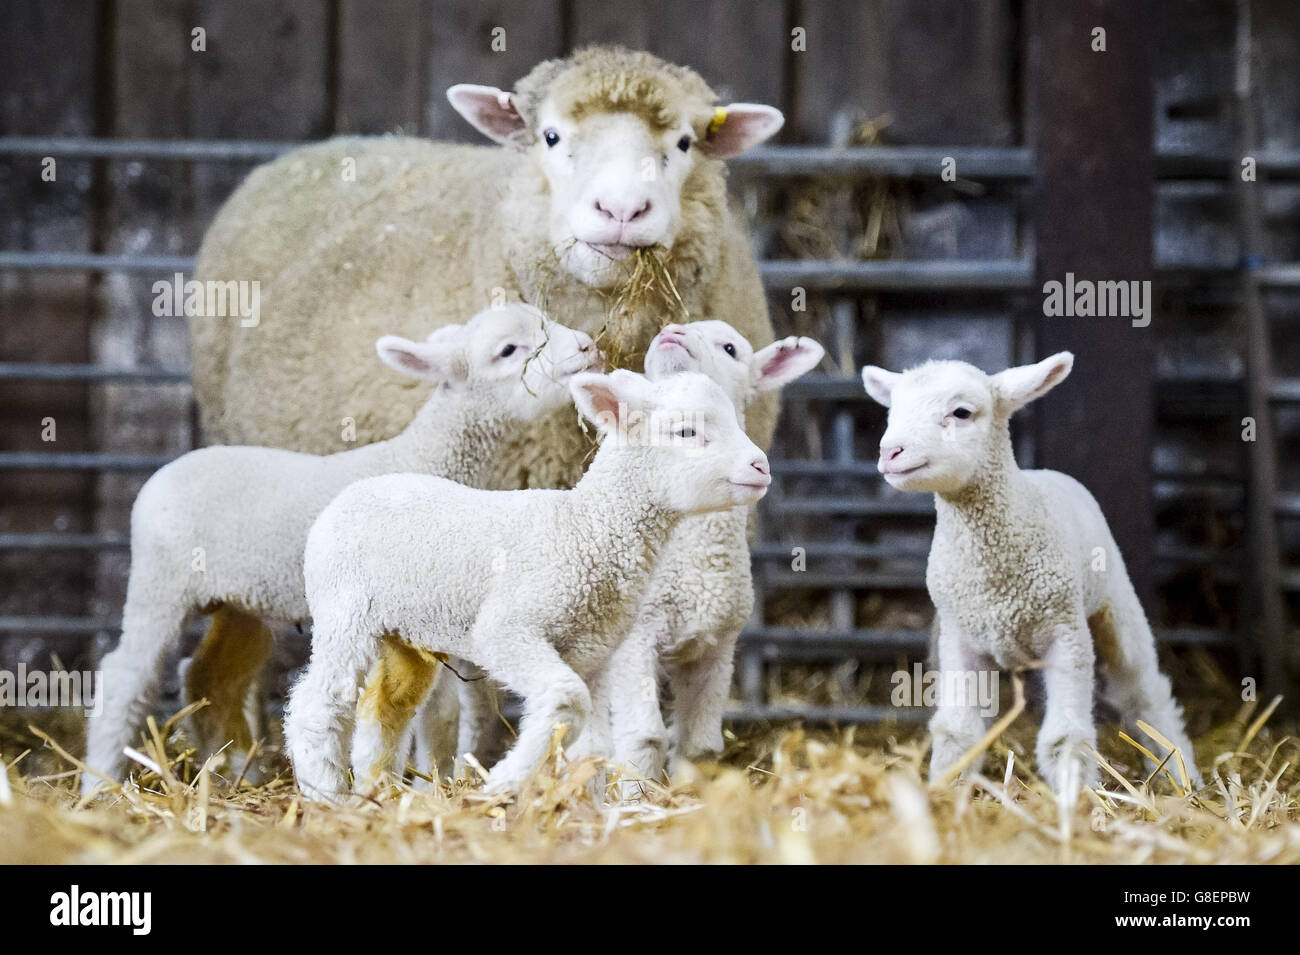 Les nouveau-nés de quatre agneaux se rassemblent autour de leur mère à Olde House, dans les Cornouailles, où le temps doux a aidé à faciliter l'agneaux précoces à la ferme. Banque D'Images